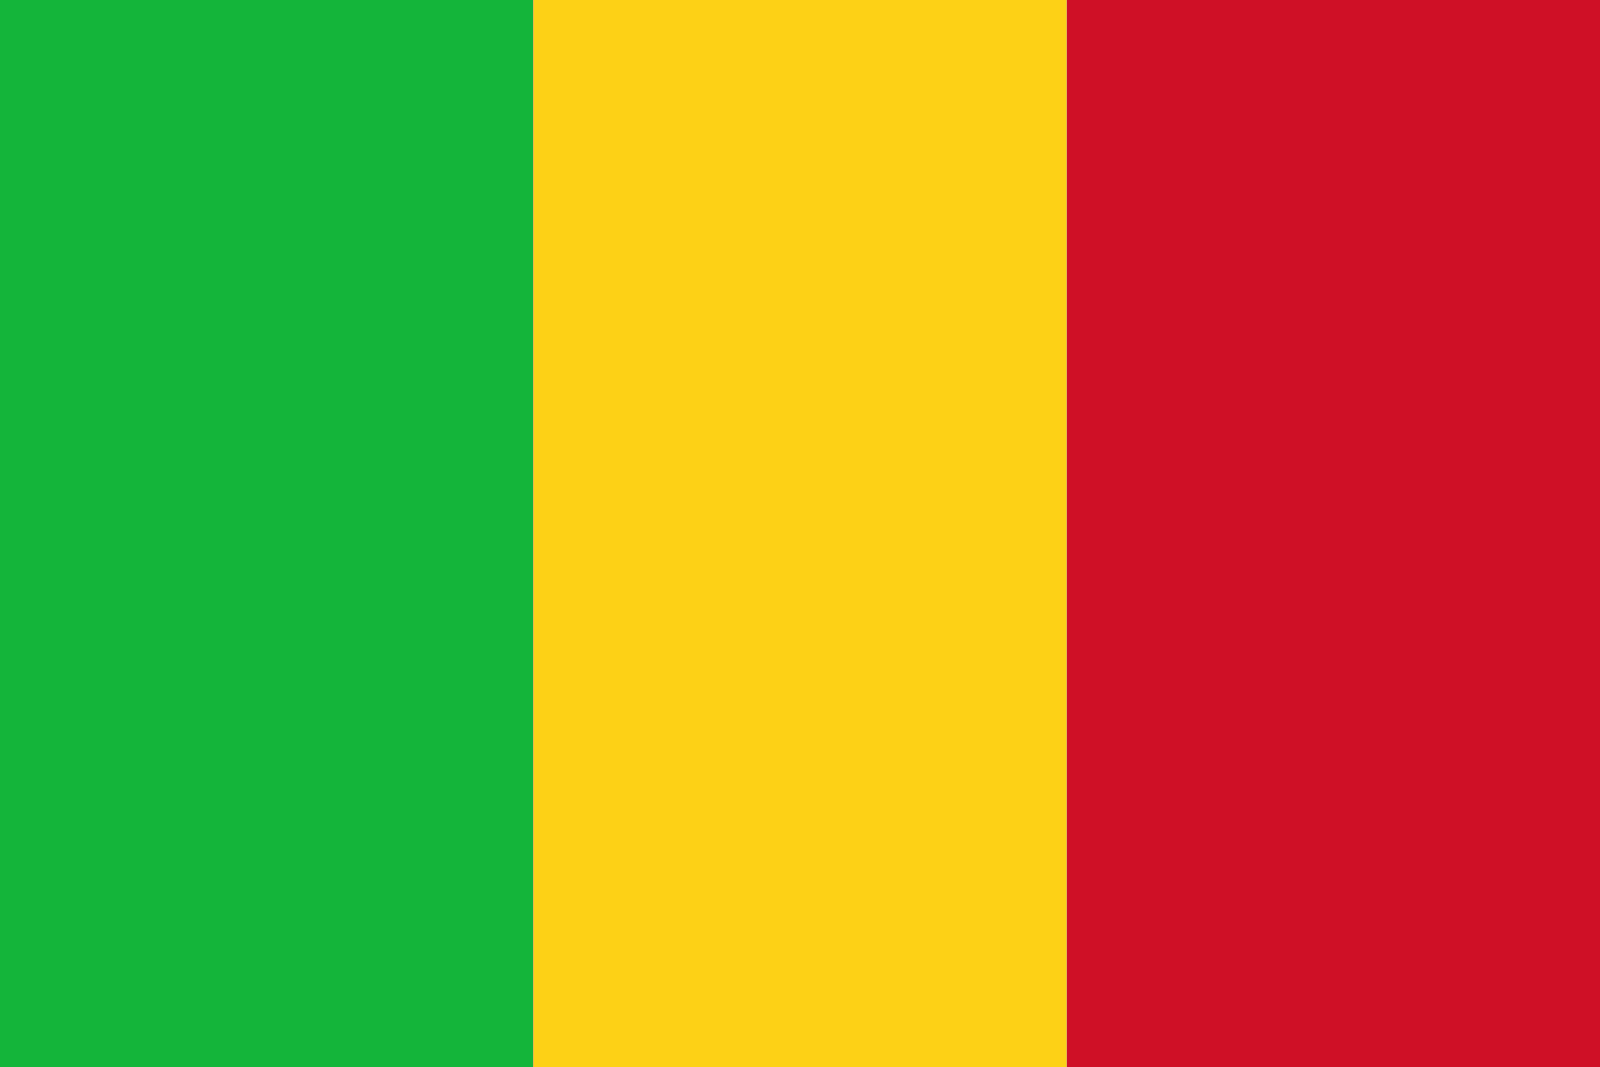 Malian Flag